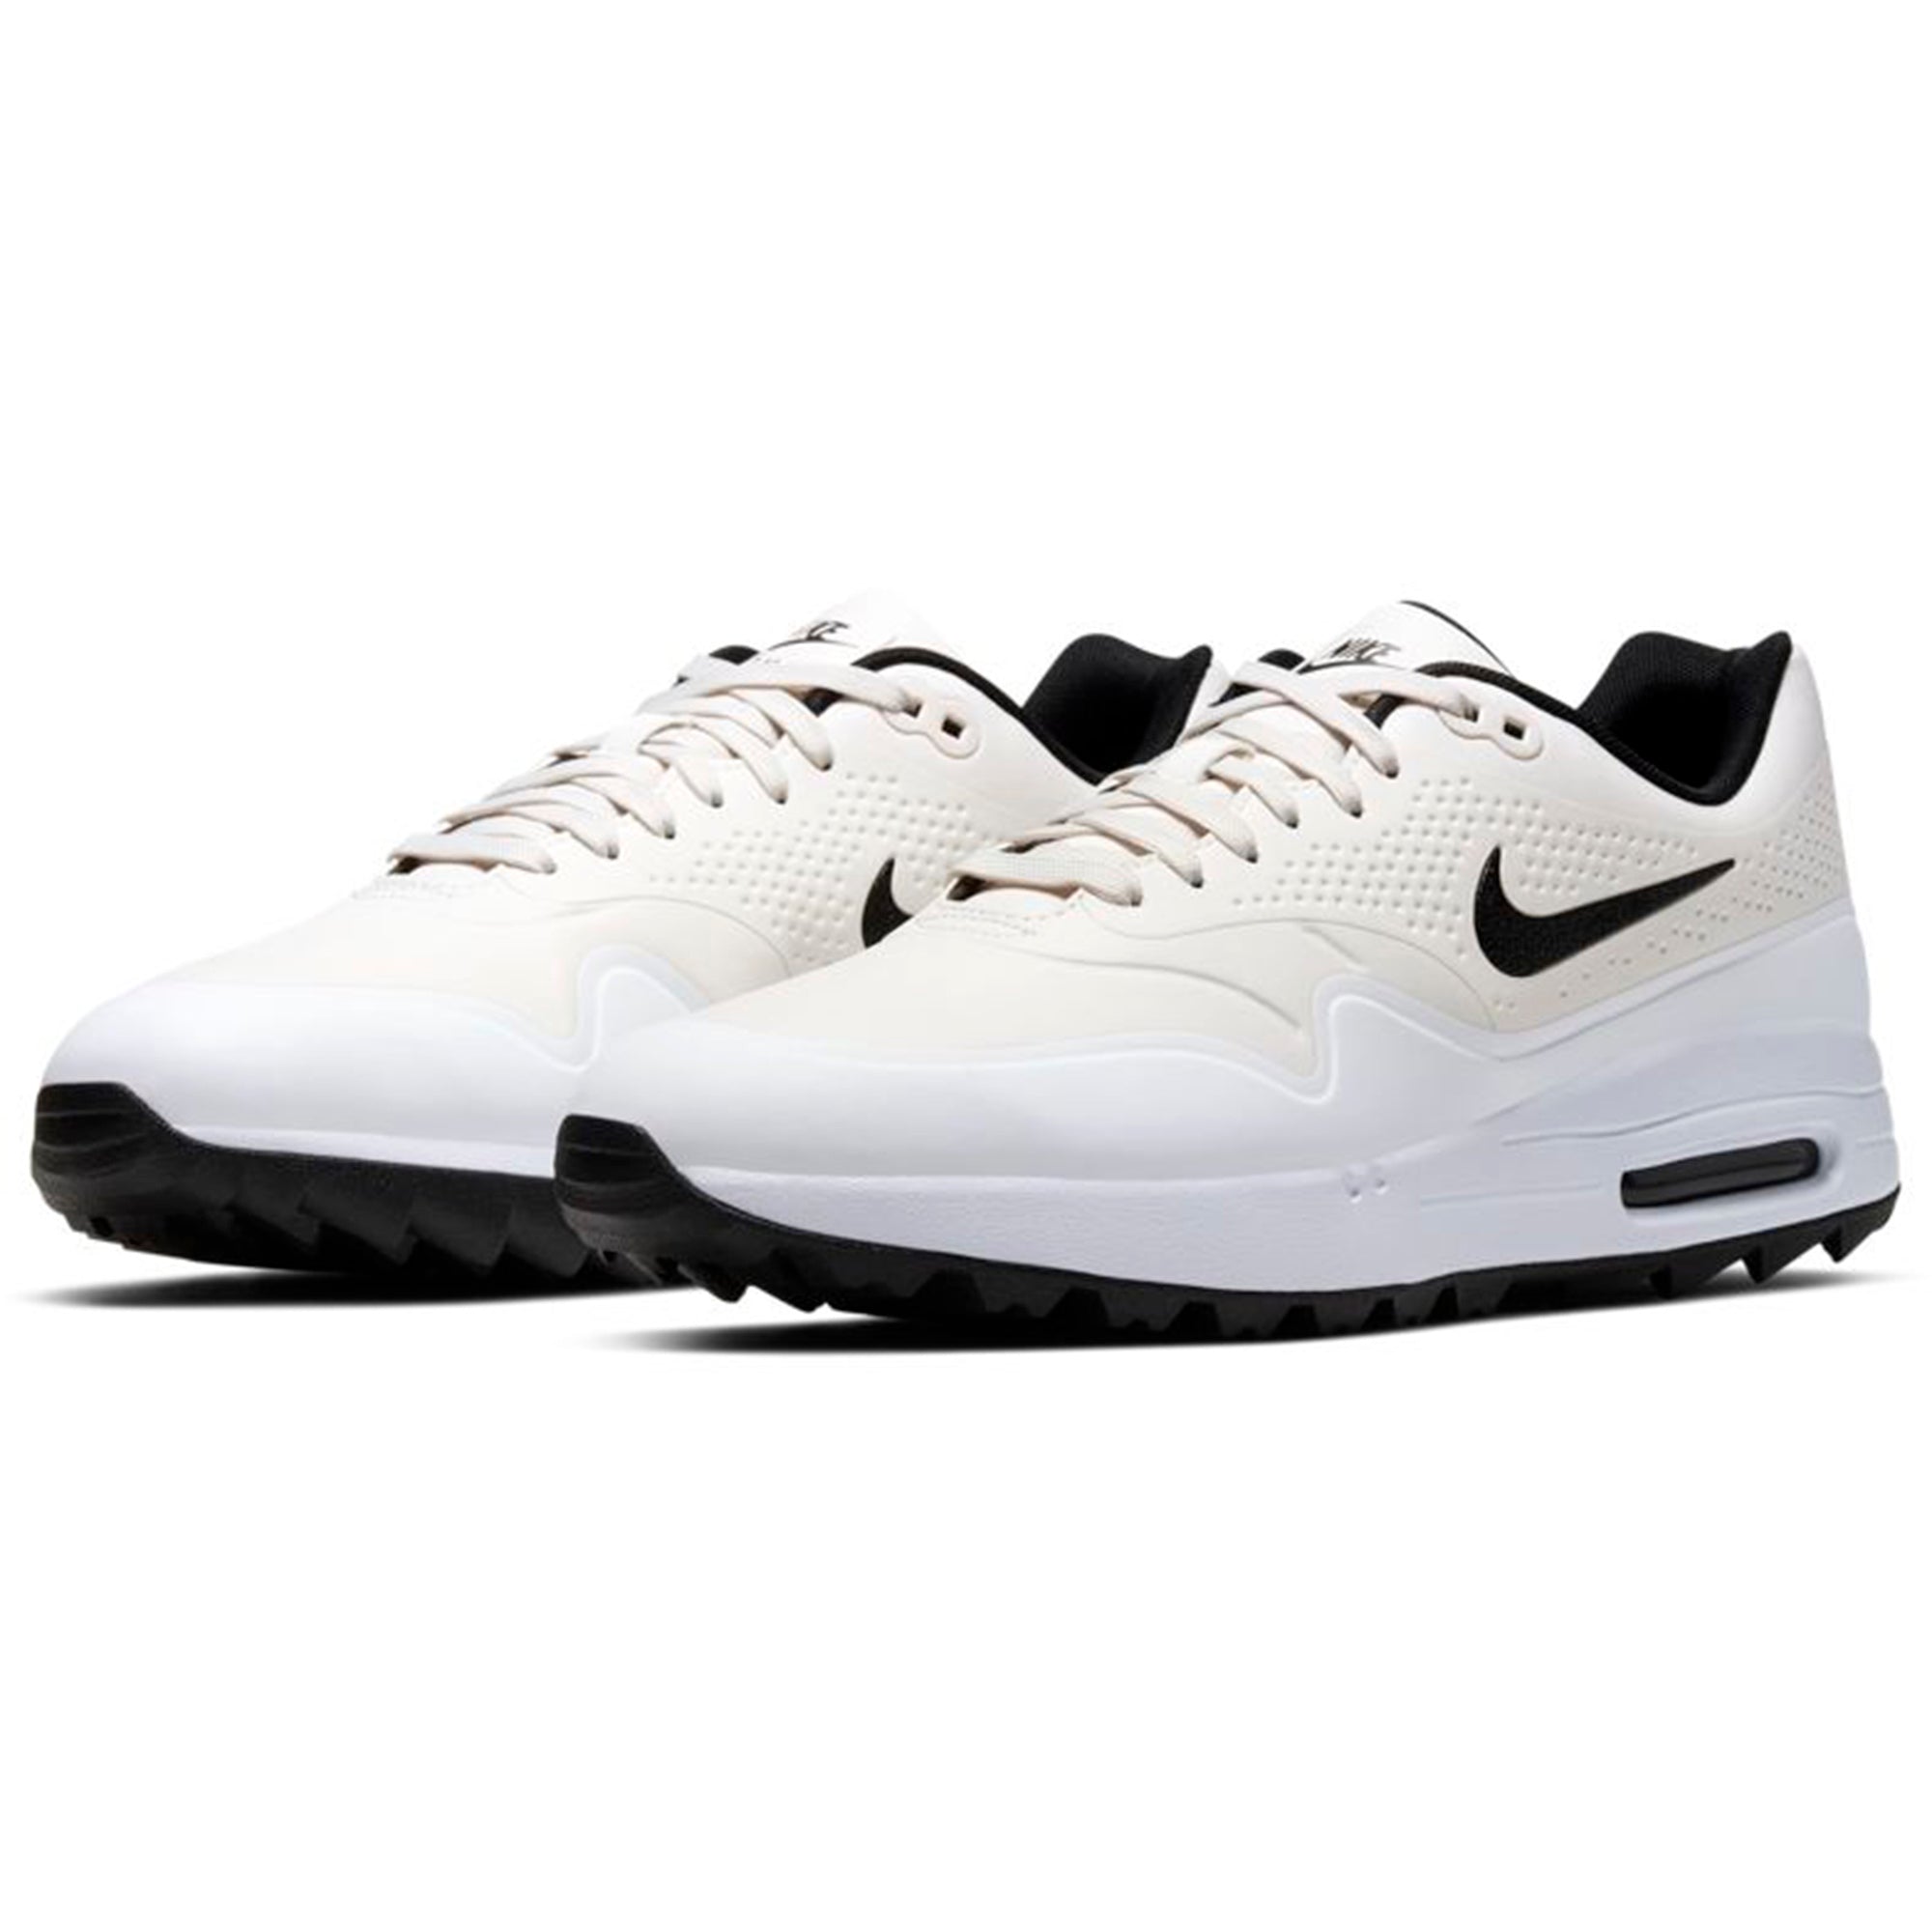 Nike Air Max 1 G Golf Shoes AQ0863 Phantom White Black 008 & Function18